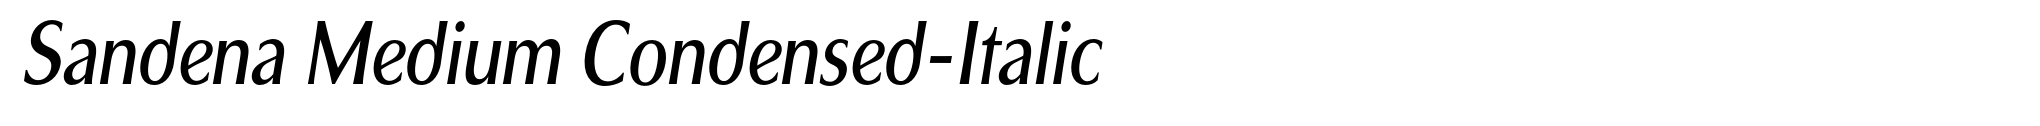 Sandena Medium Condensed-Italic image